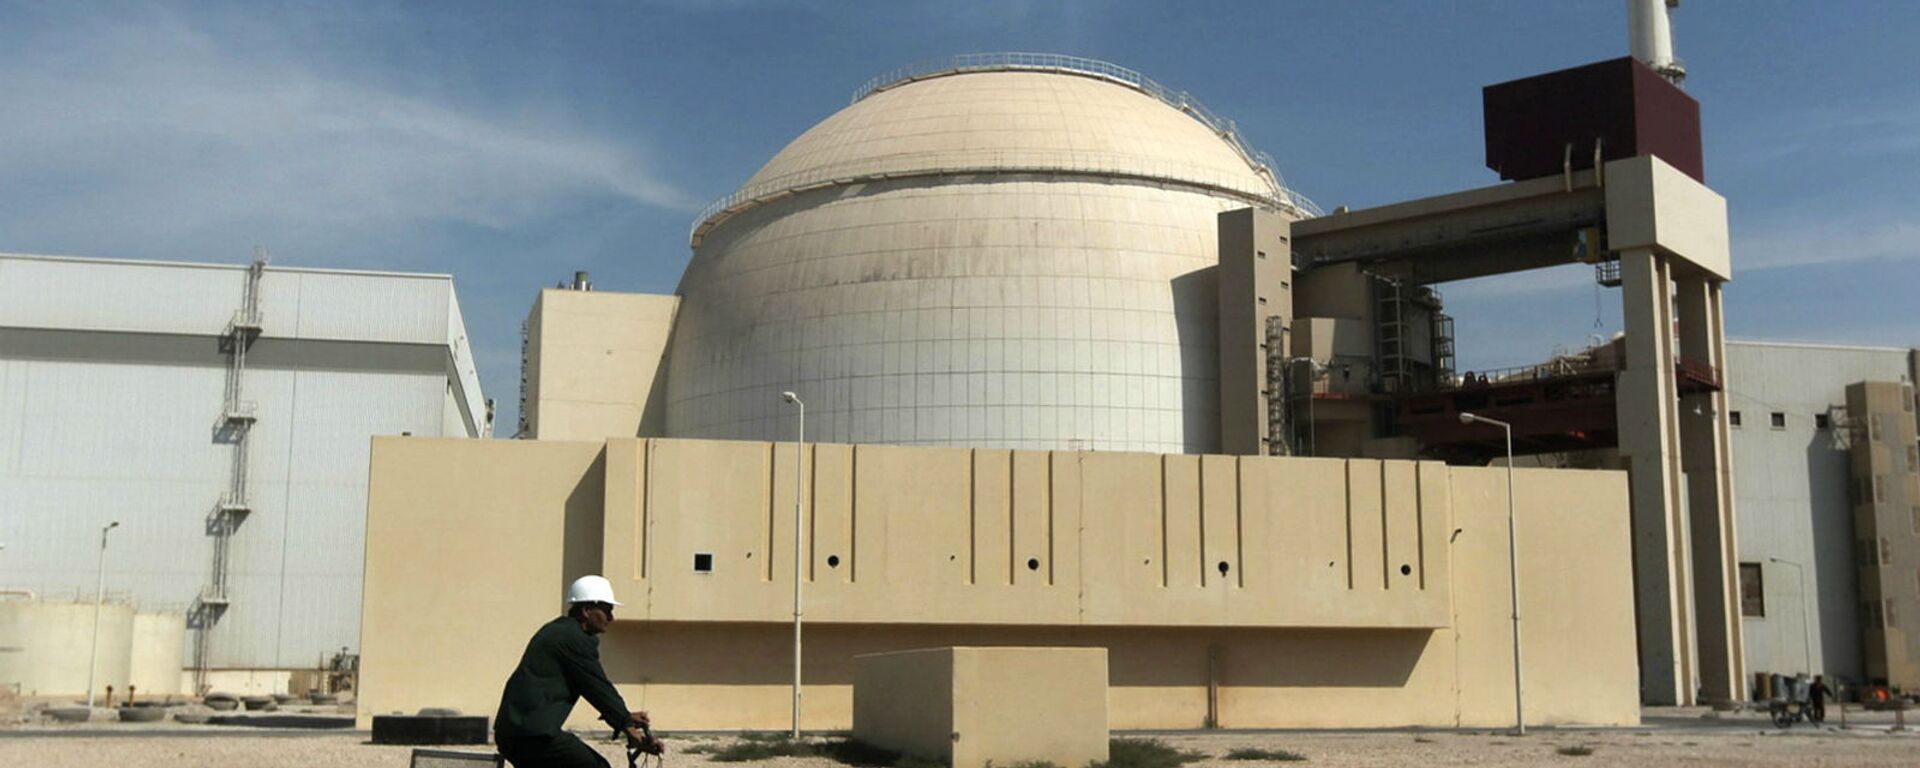 Здание реактора АЭС Бушер (26 октября 2010). Иран - Sputnik Армения, 1920, 02.02.2021